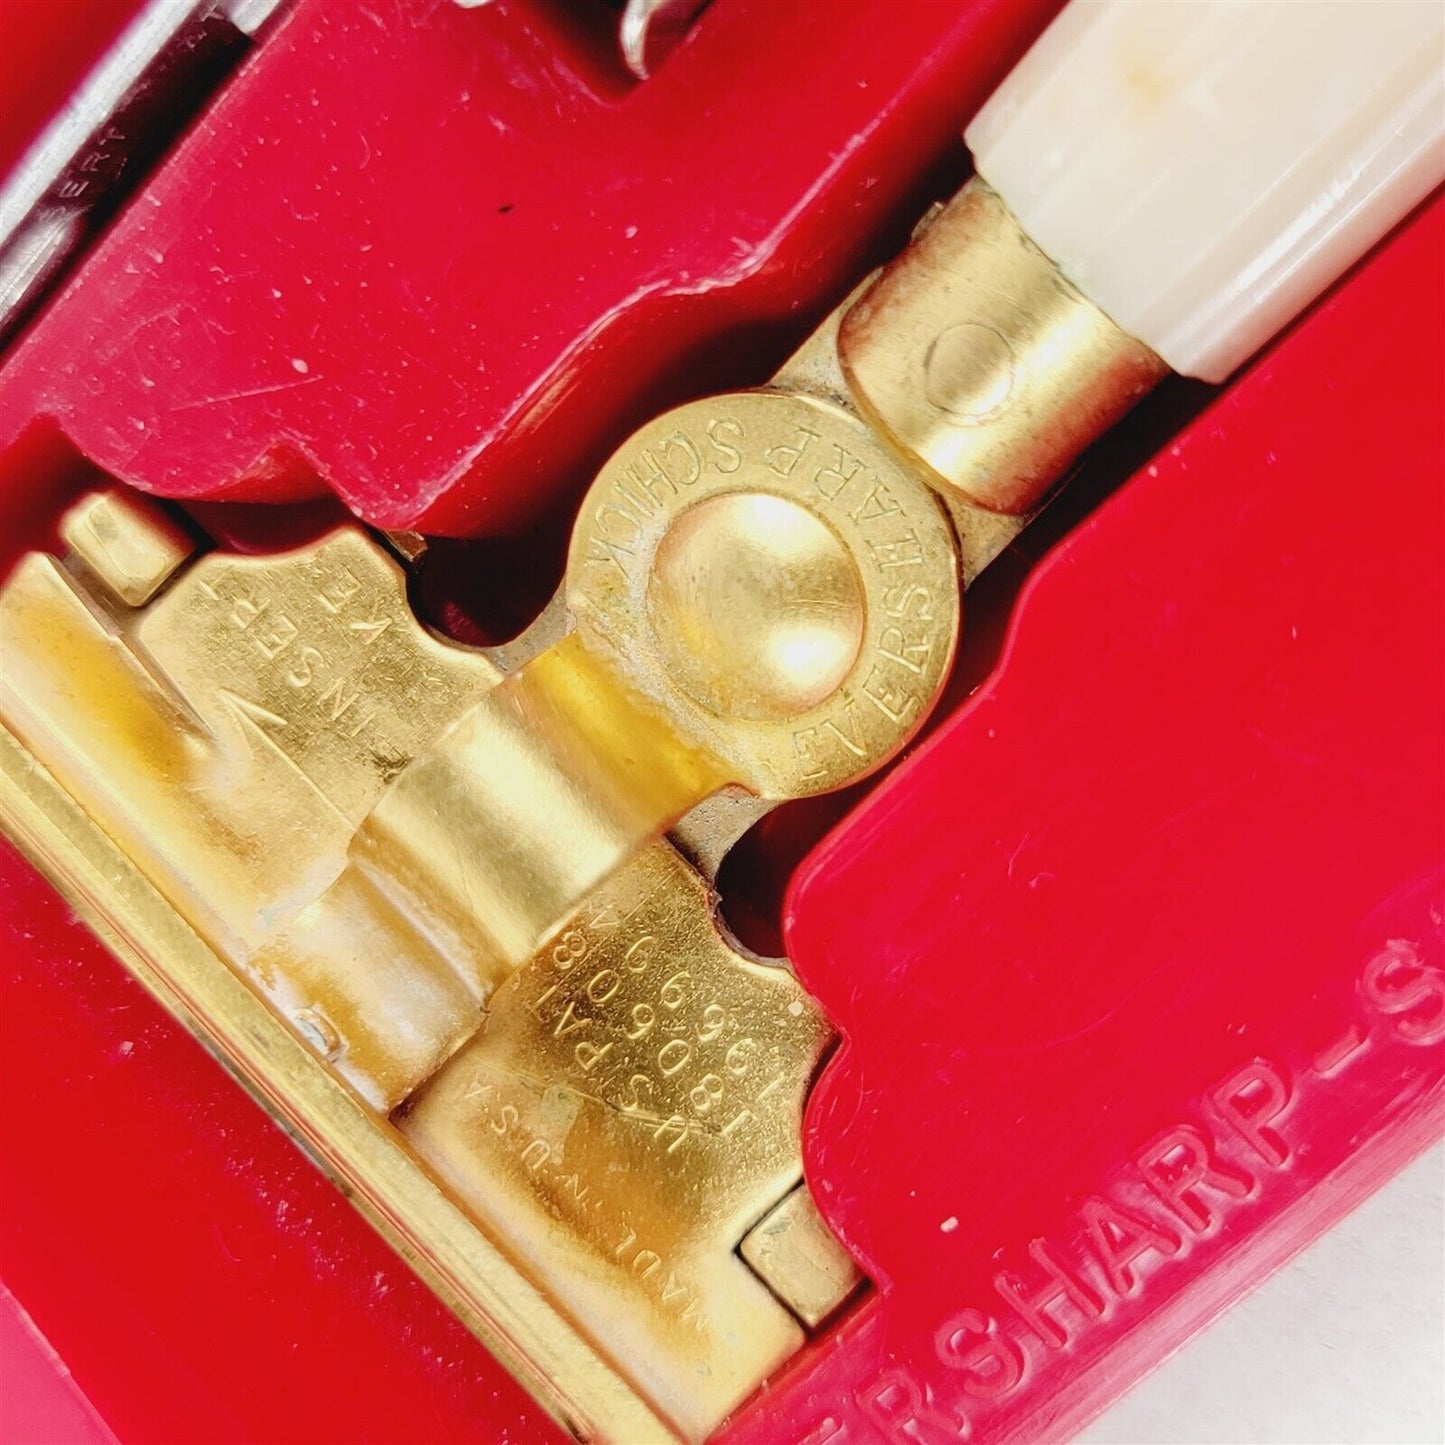 Eversharp Schick Injector Razor in Case w/ Blades Vintage Razor Made in USA